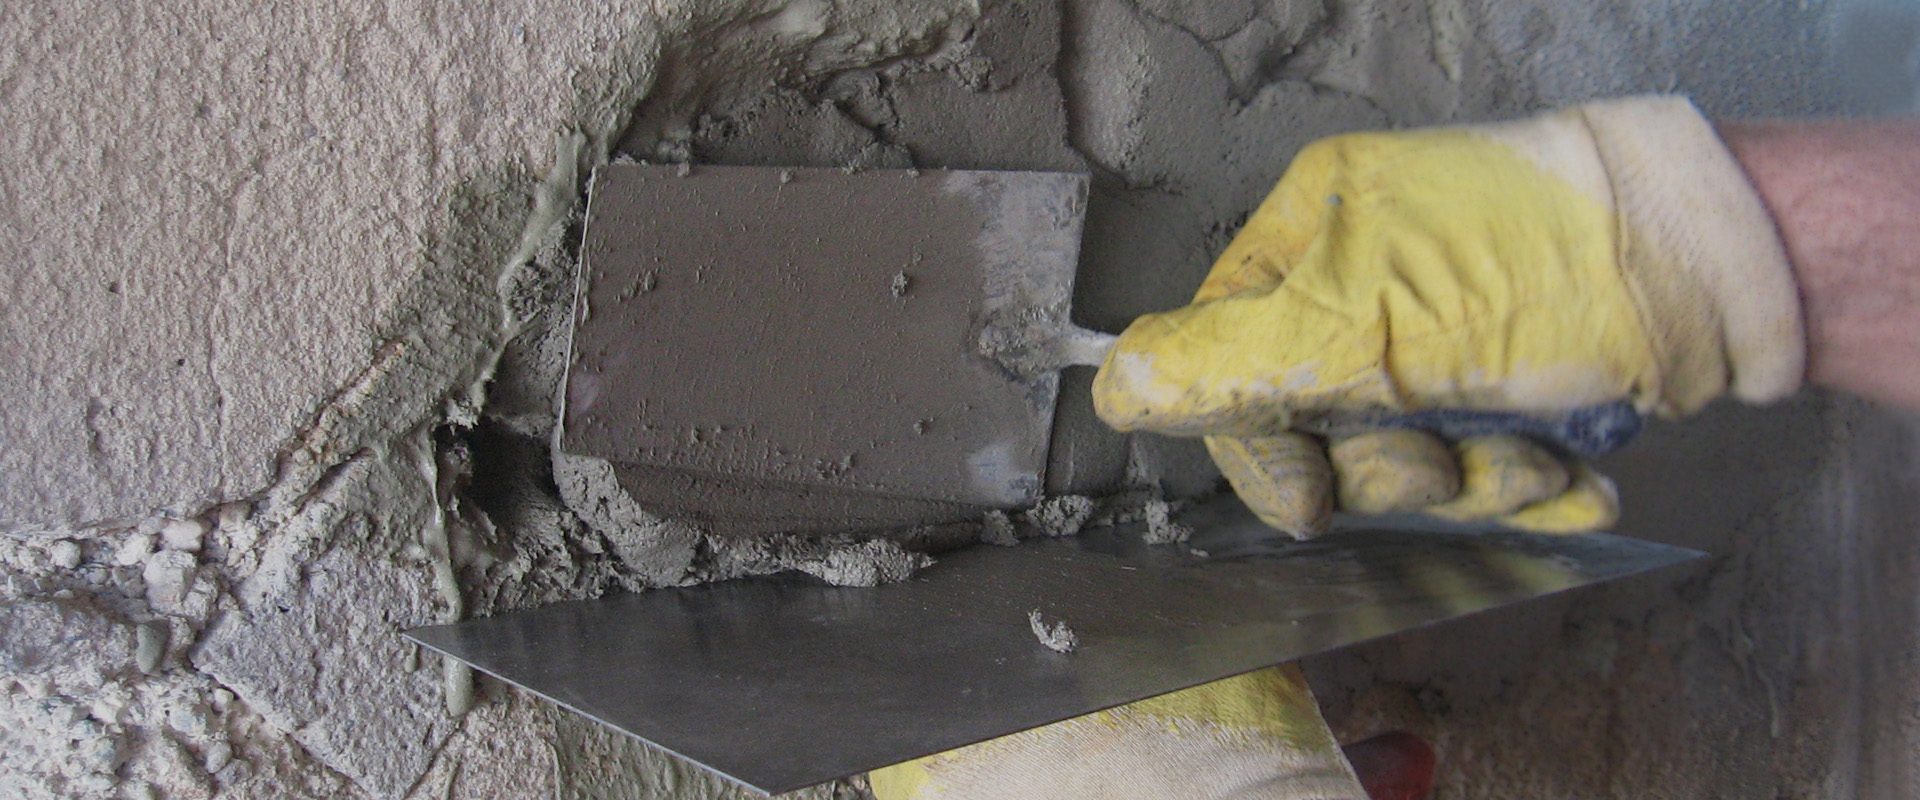 Concrete replacement - MC-Bauchemie